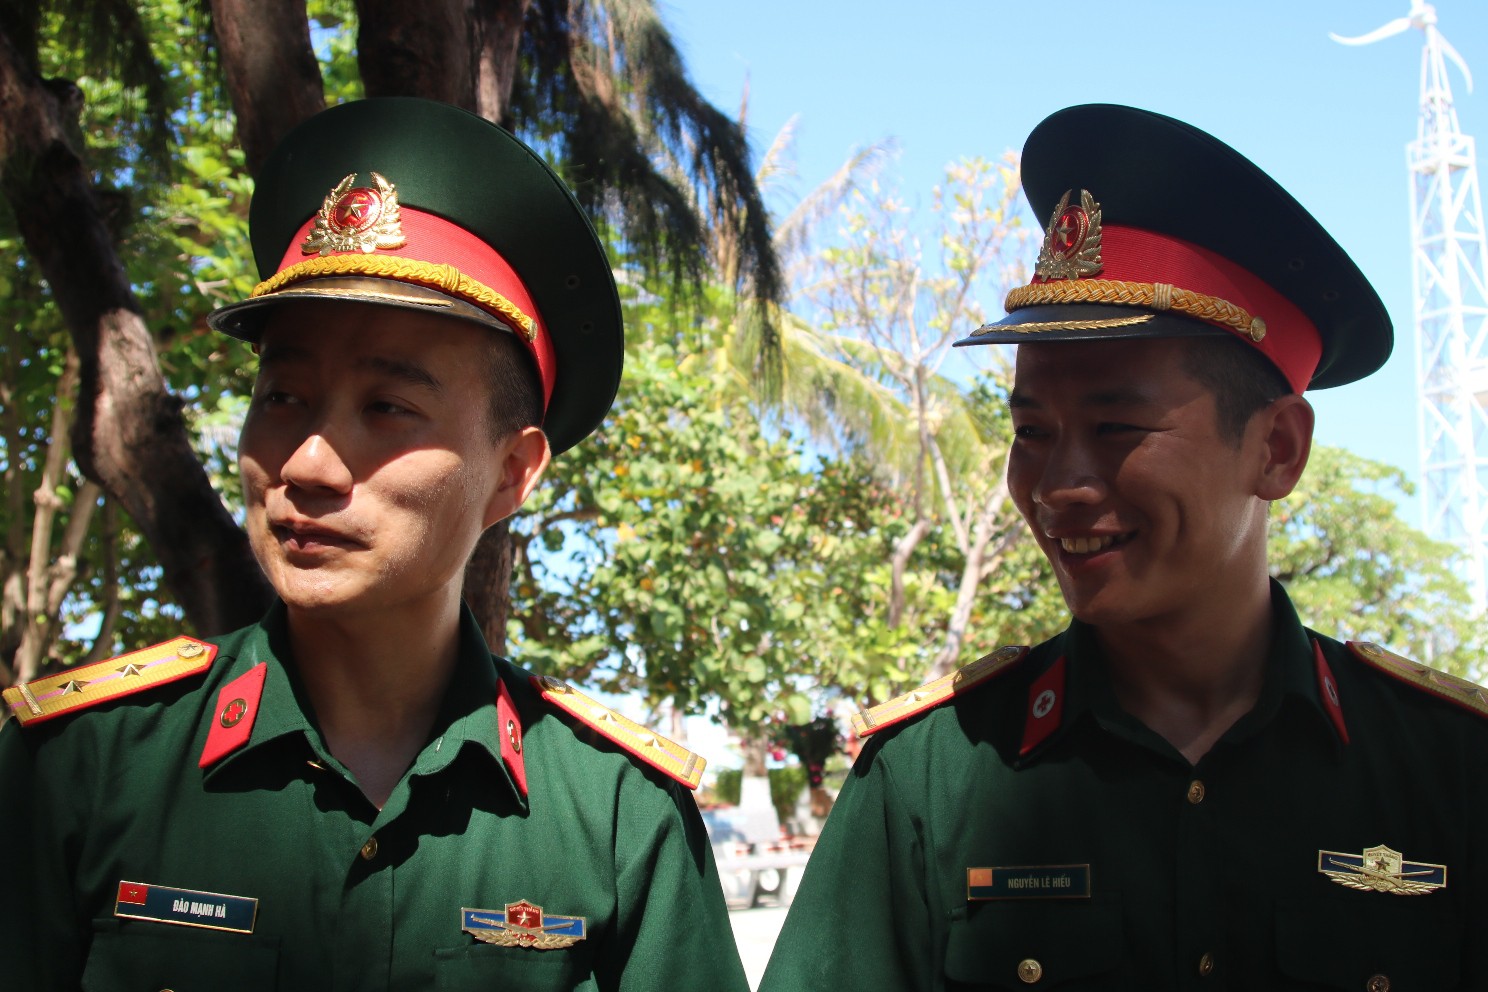 Đặc biệt lễ chào cờ ở Trường Sa của Việt kiều từ khắp nơi trên thế giới - Ảnh 8.